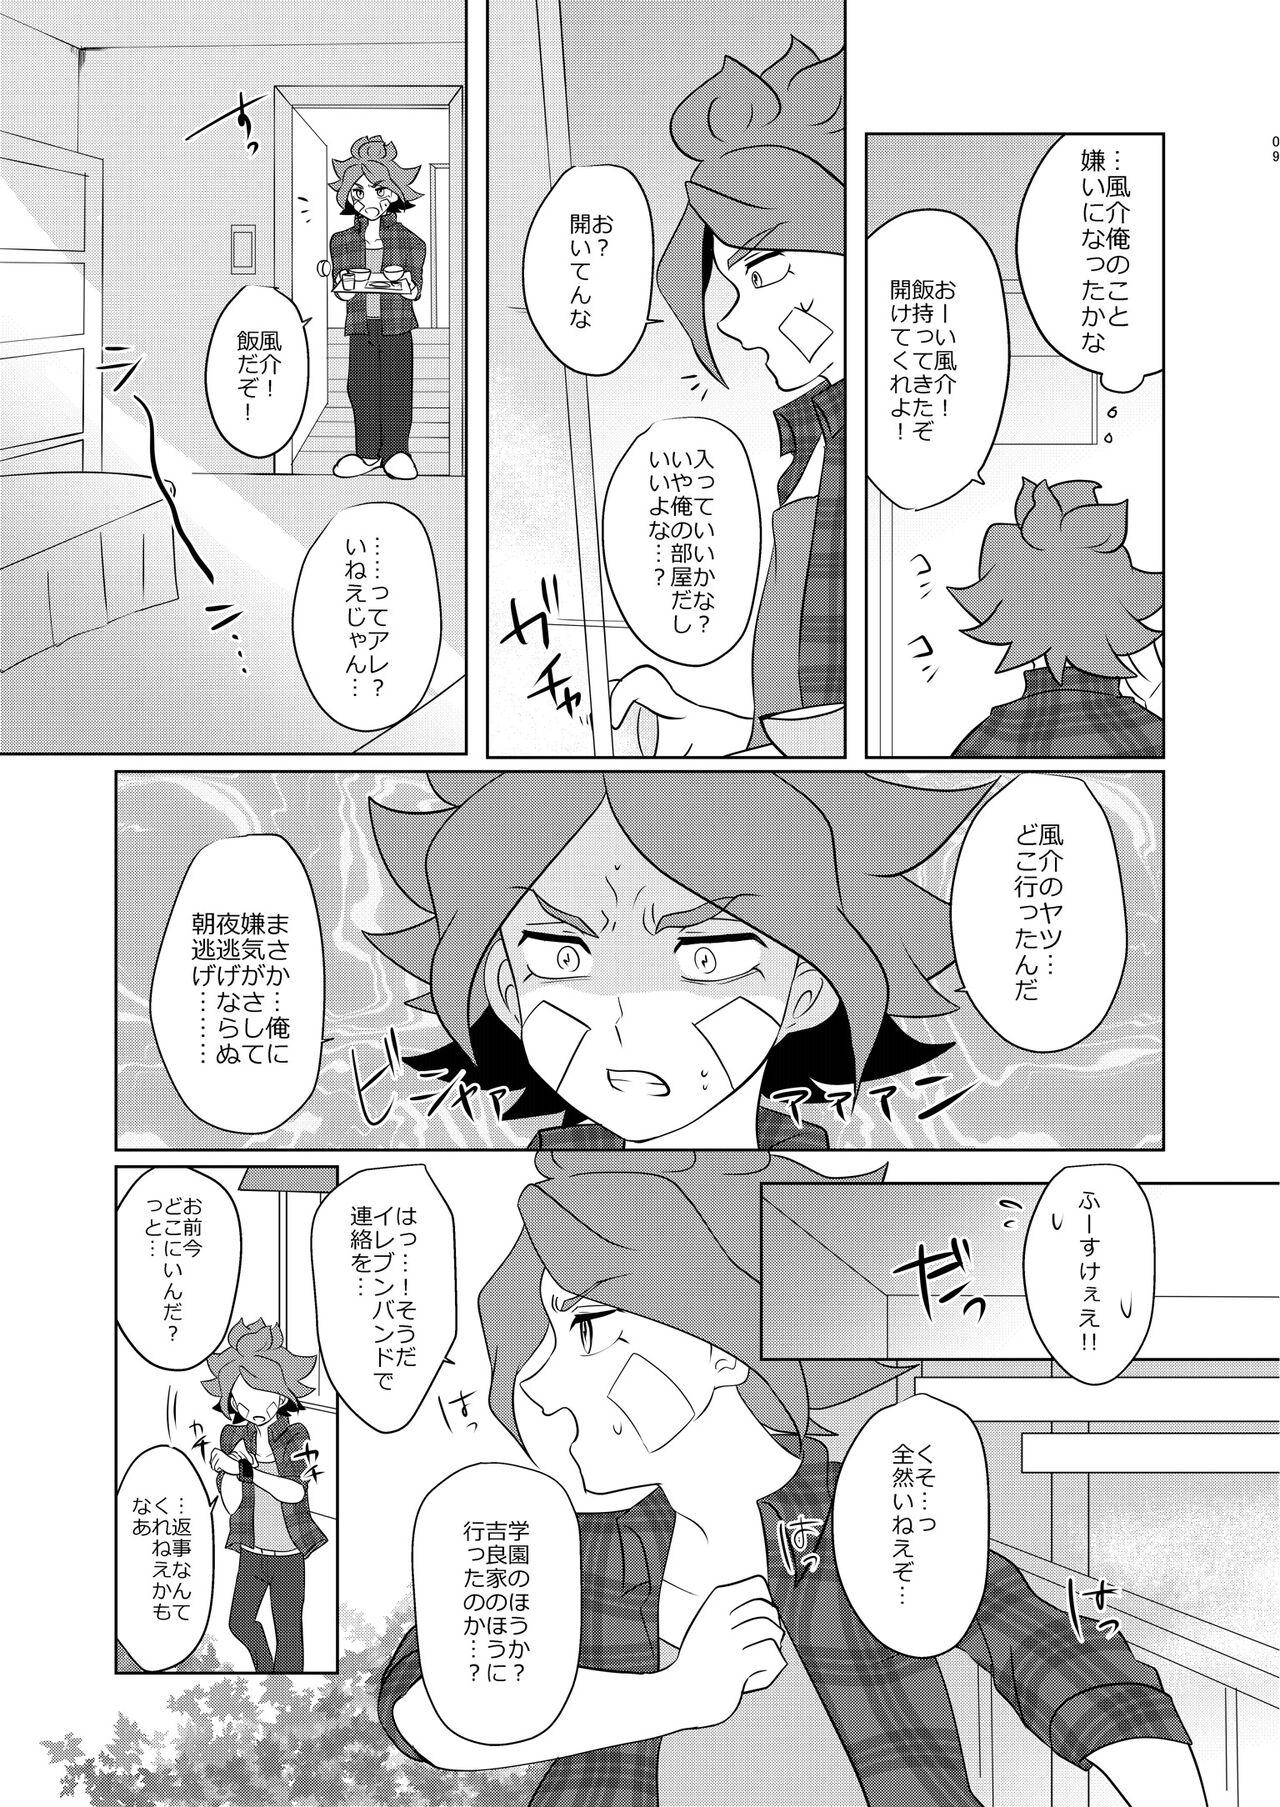 Old Watashi no Shiranai Kimi o Shiritai - Inazuma eleven Plug - Page 8